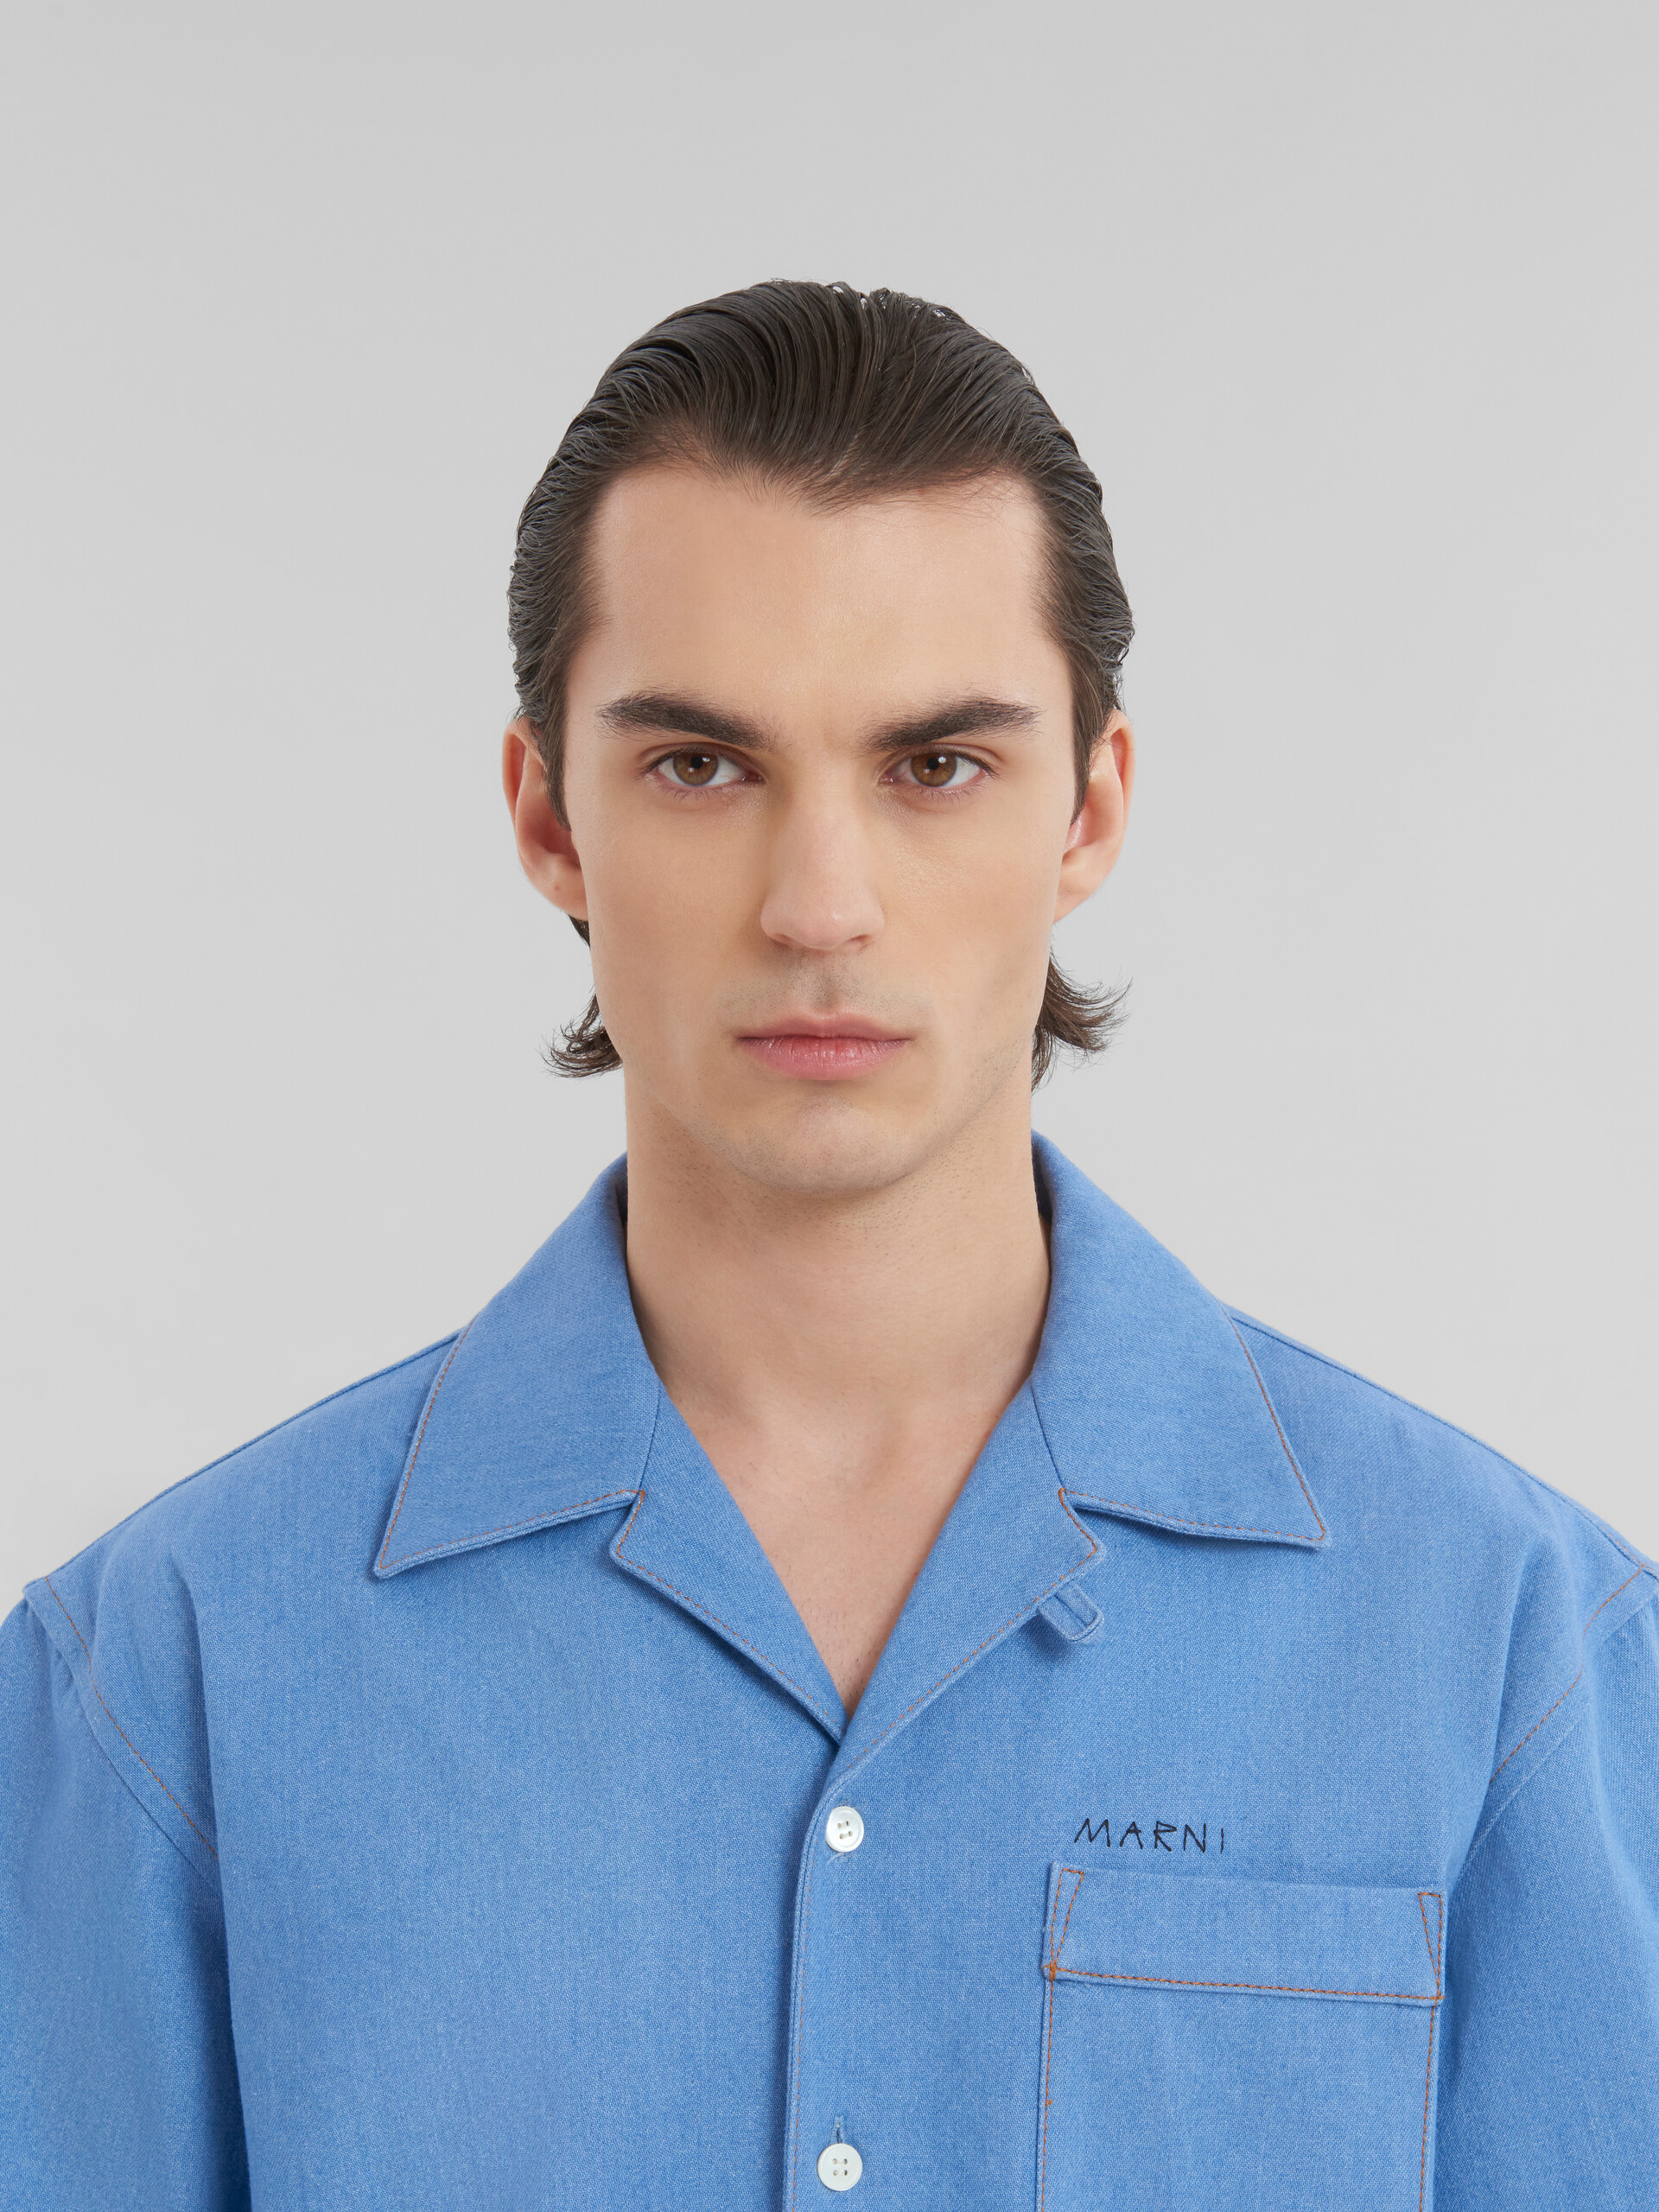 ブルー マルニ メンディングロゴ付き デニム製 ボーリングシャツ - シャツ - Image 4